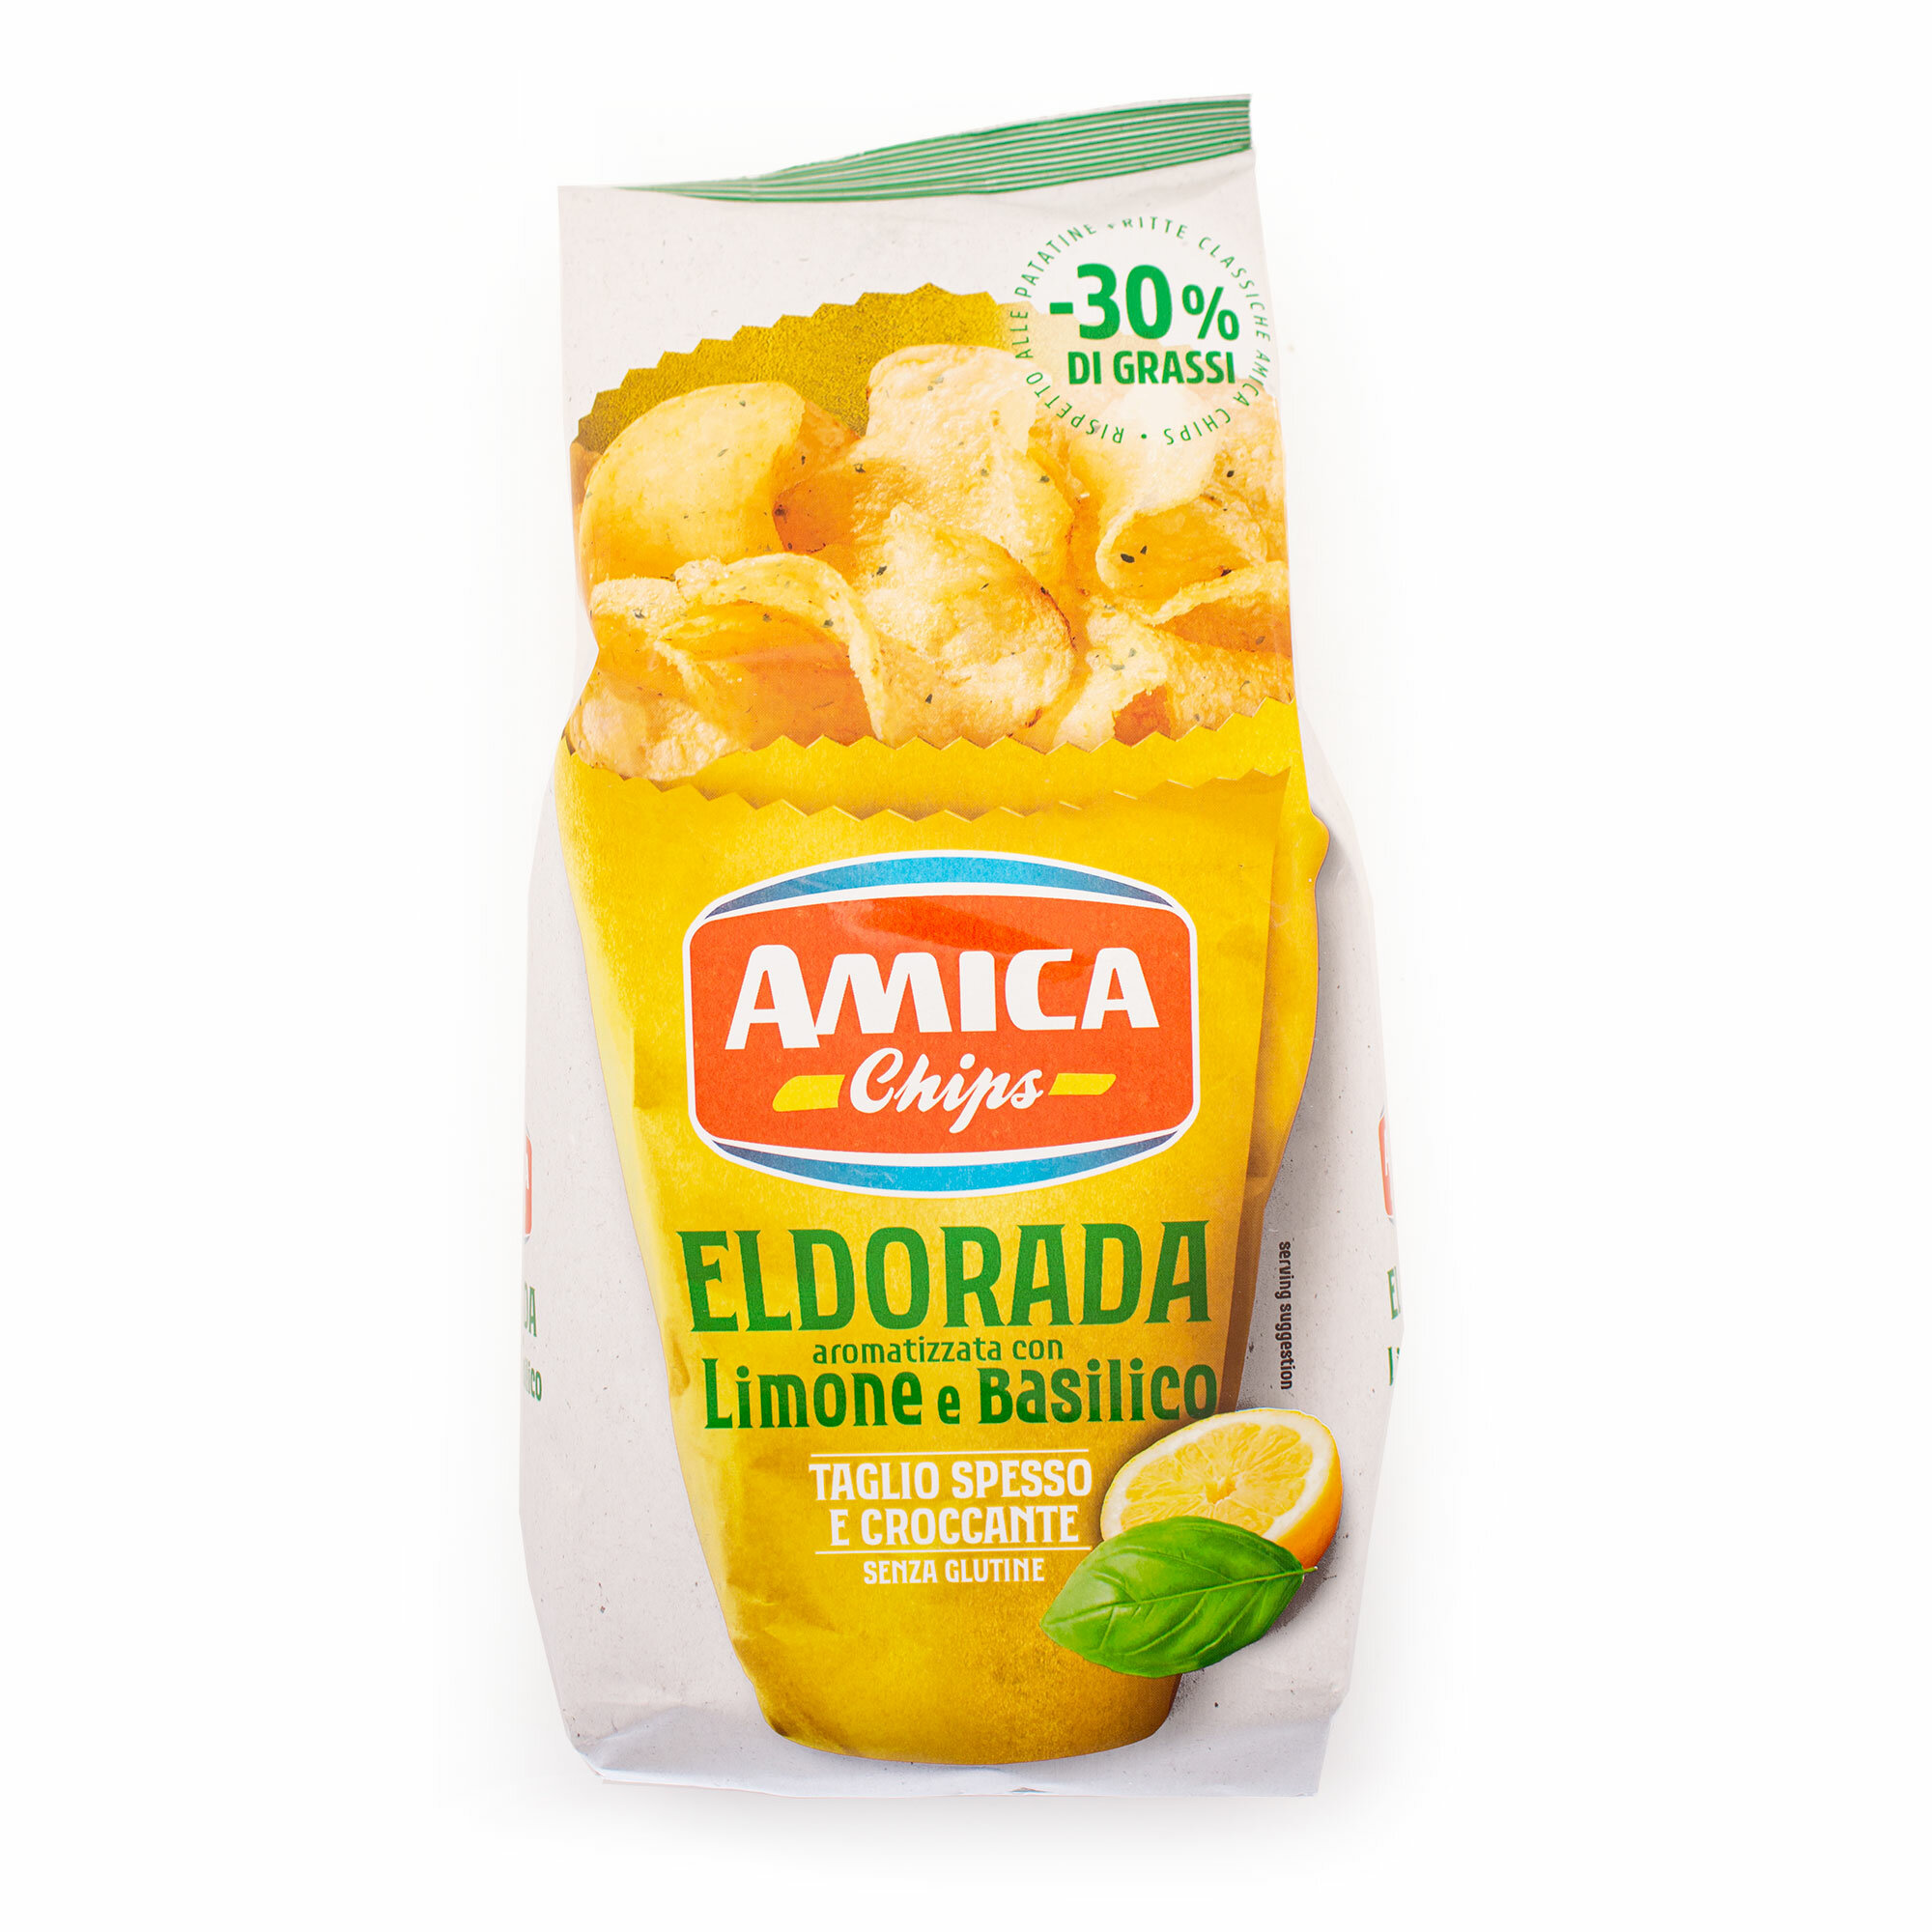 Чипсы картофельные со вкусом лимона и базилика с пониженным содержанием жира (-30%) ELDORADA, T.M. AMICA CHIPS, 0,130 кг